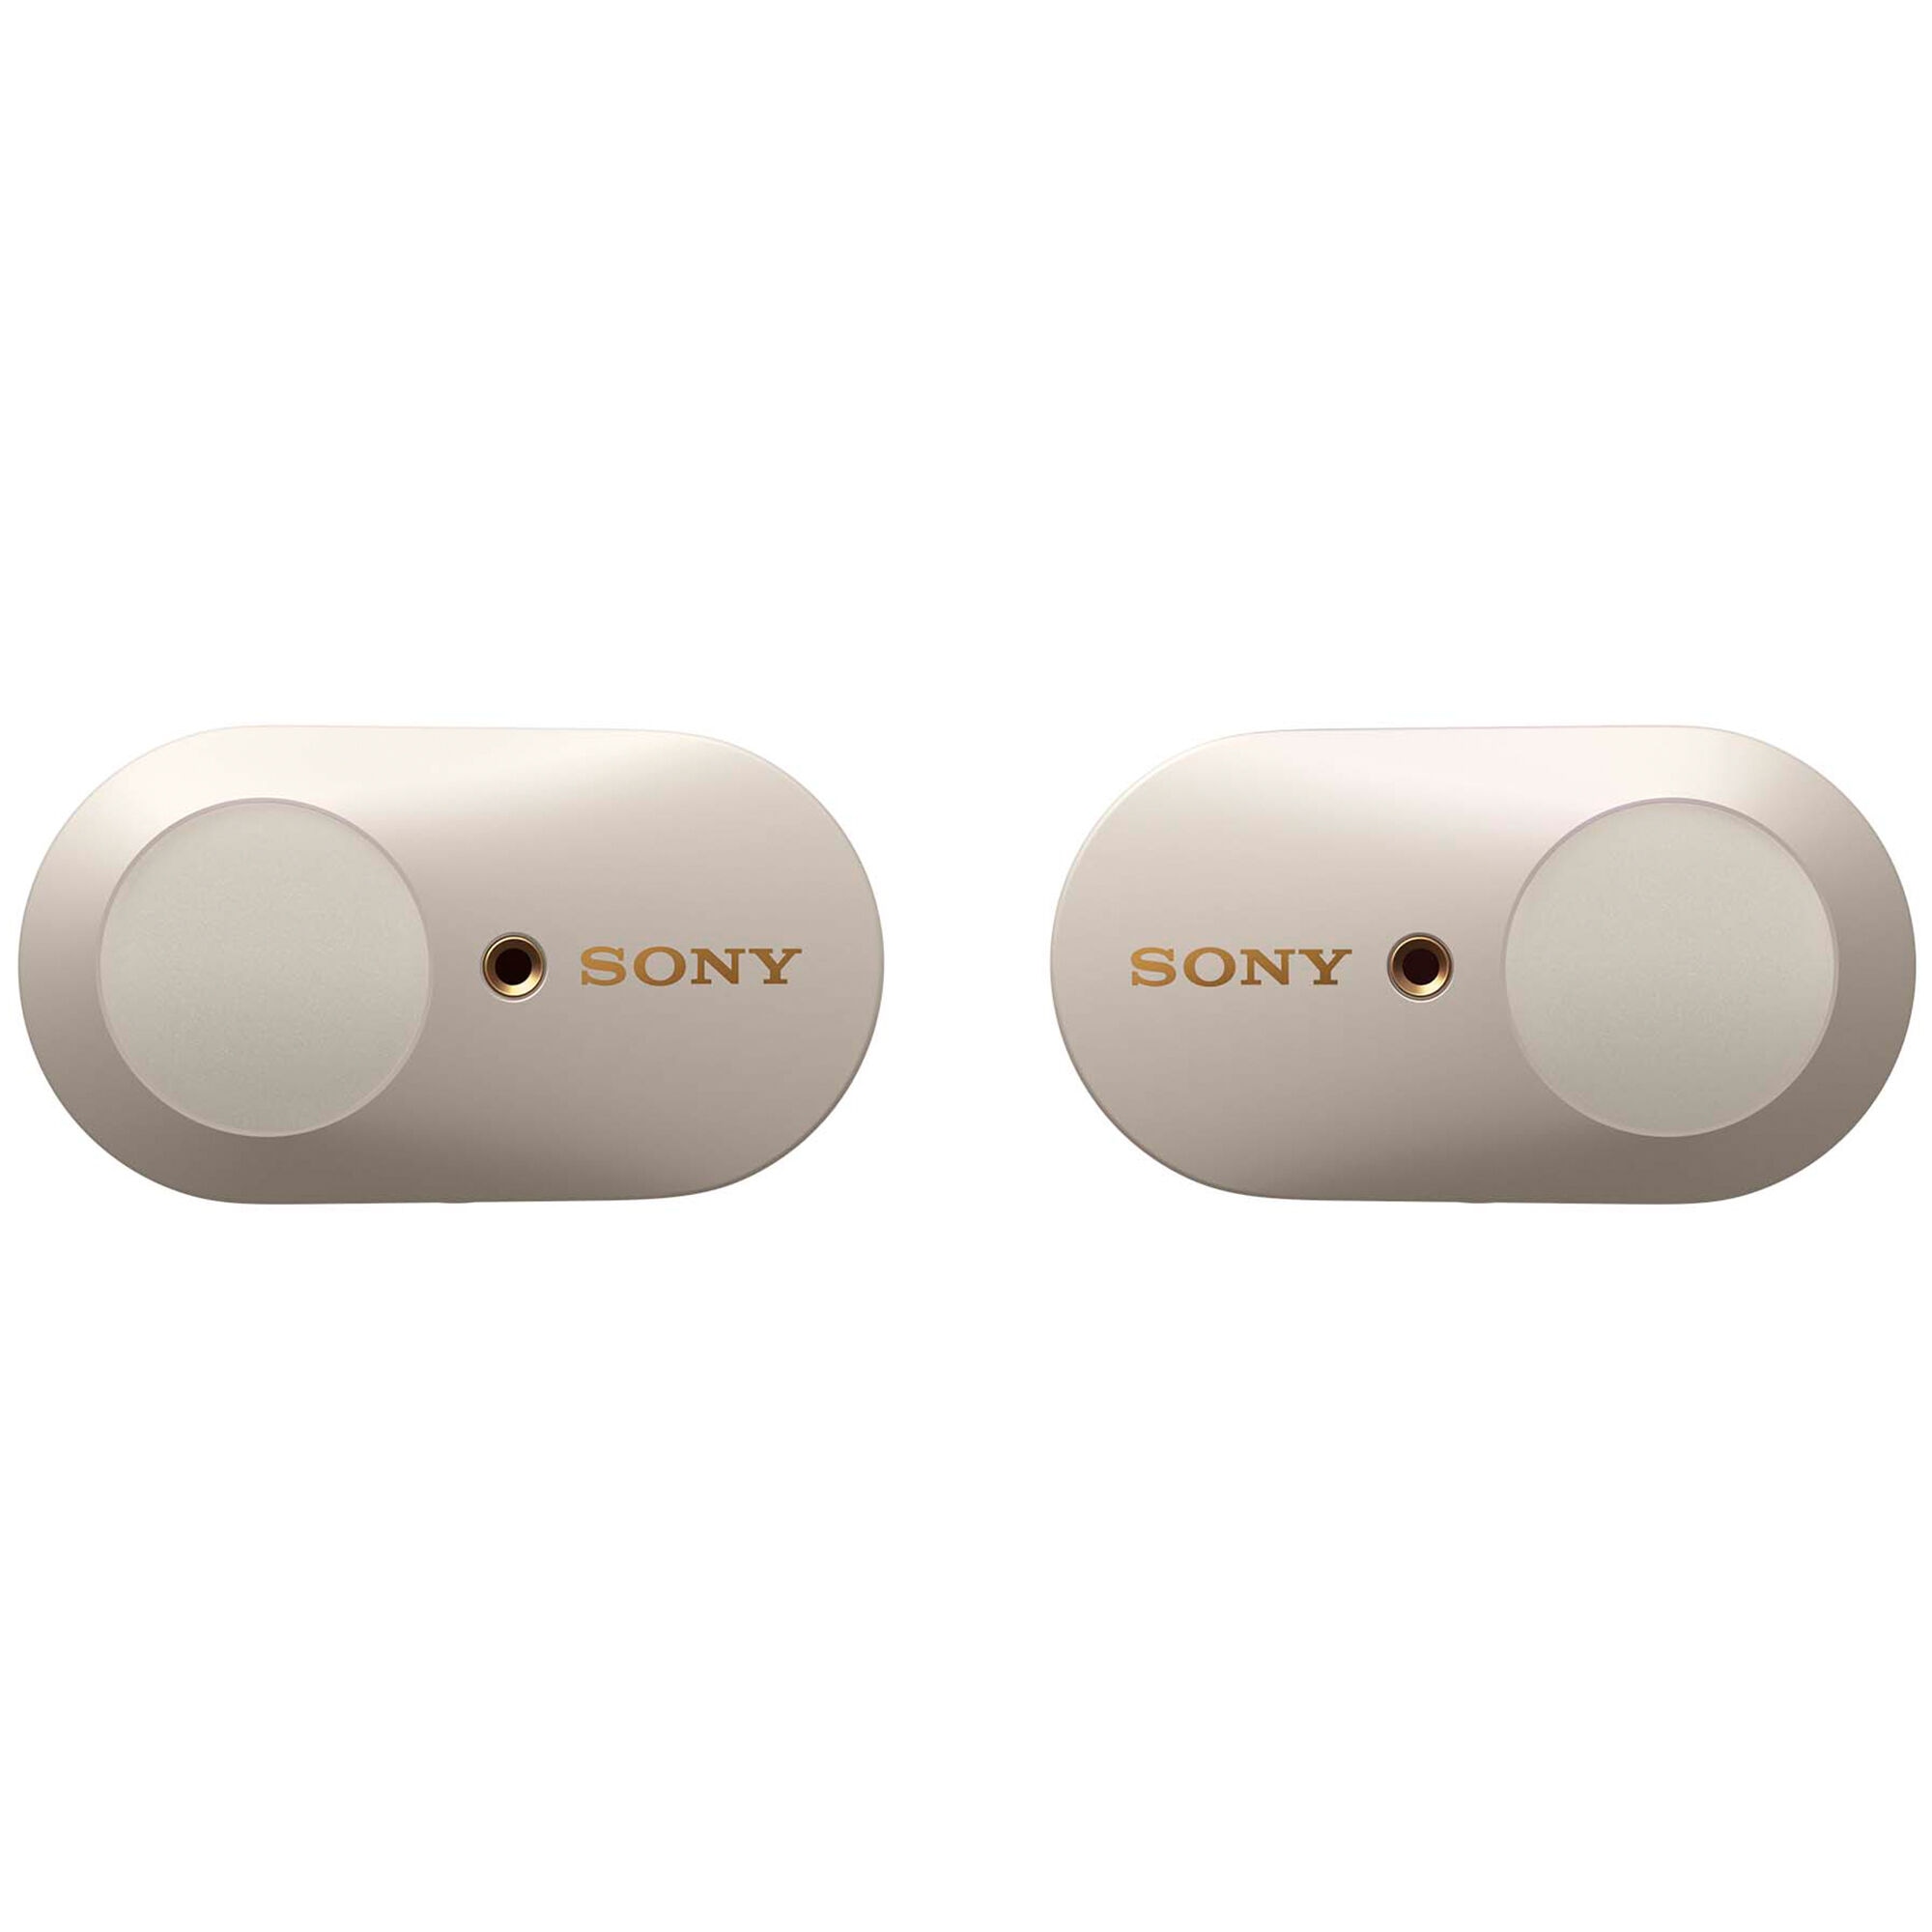 Sony WF-1000XM3 True Wireless Noise Cancelling In-Ear Headphones - White